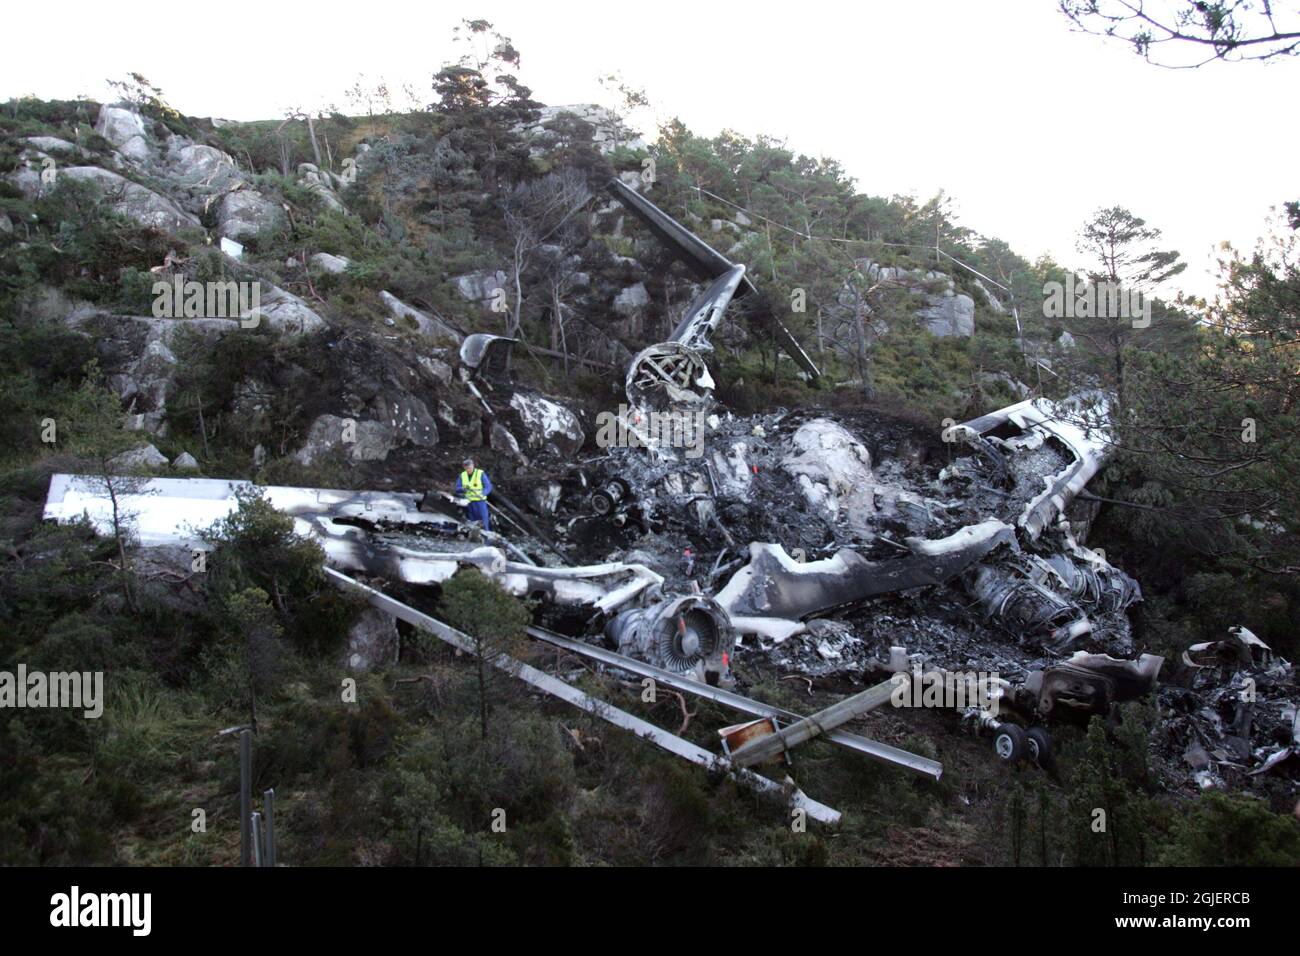 L'épave du vol de banlieue transportant 16 passagers qui s'est écrasé lors de l'atterrissage à l'aéroport de Stord en Norvège, le 11 octobre 2006. Quatre passagers sont morts à l'accident Banque D'Images